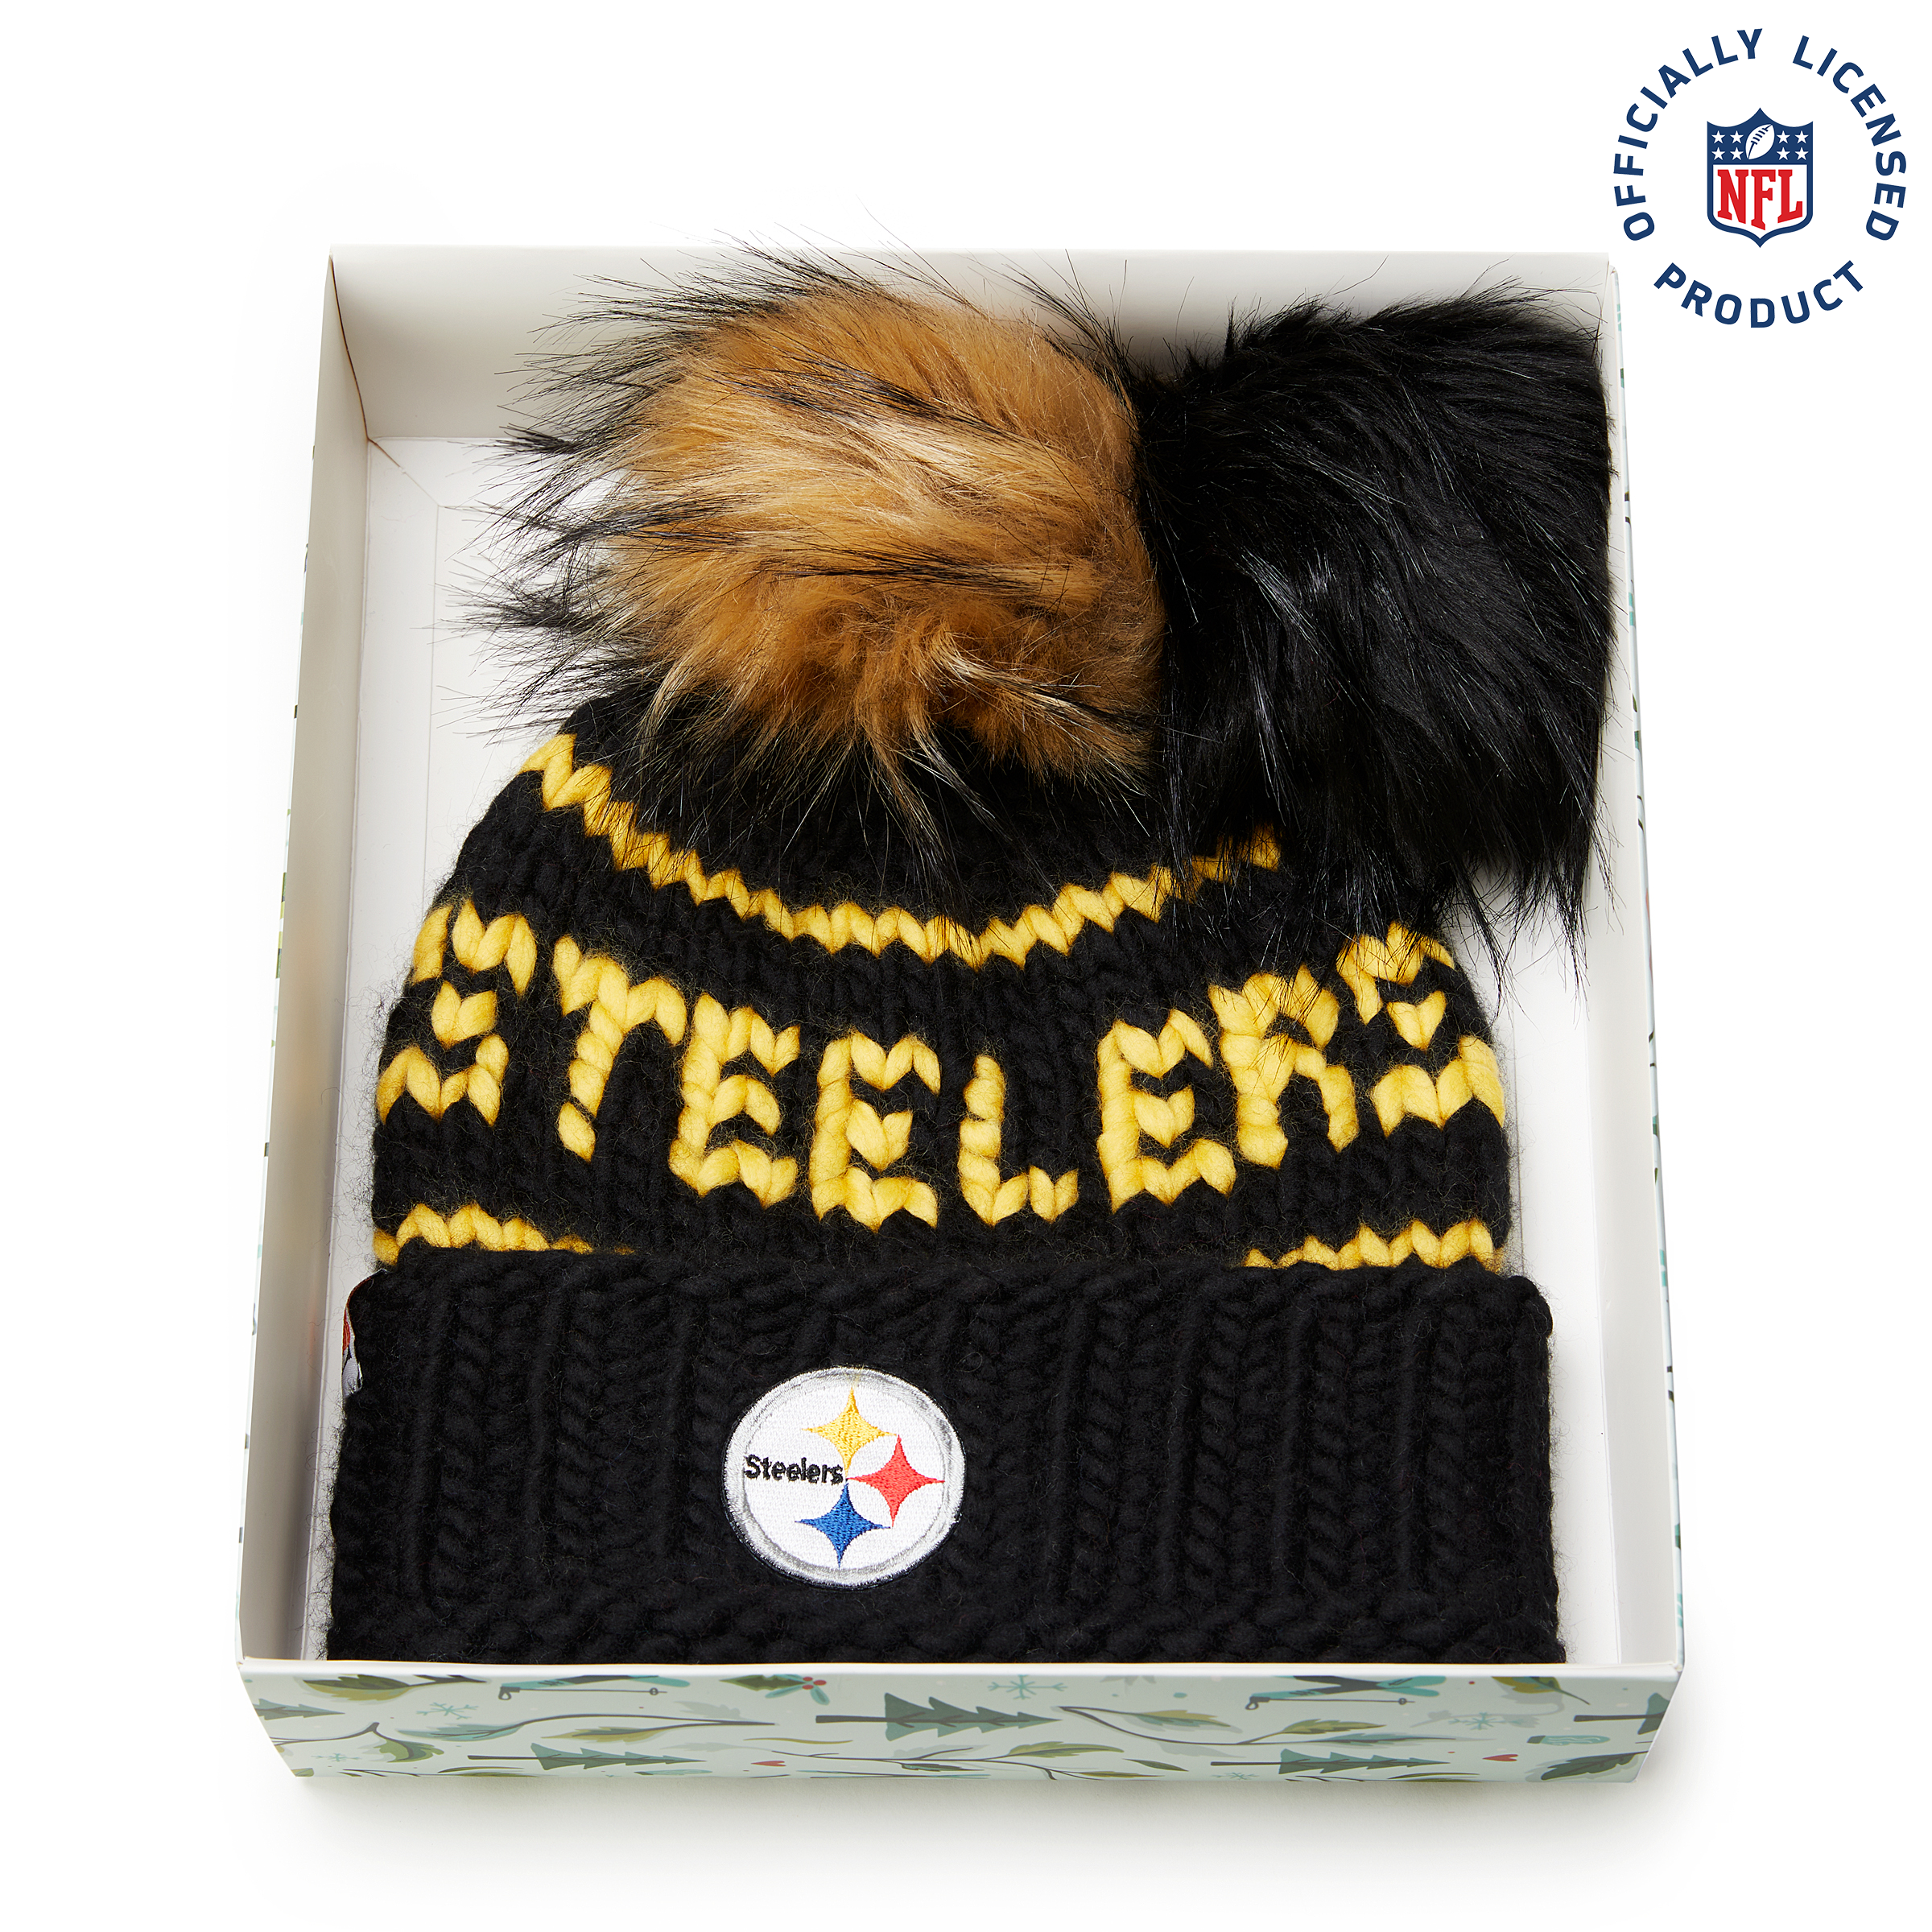 The Steelers NFL Beanie Gift Set